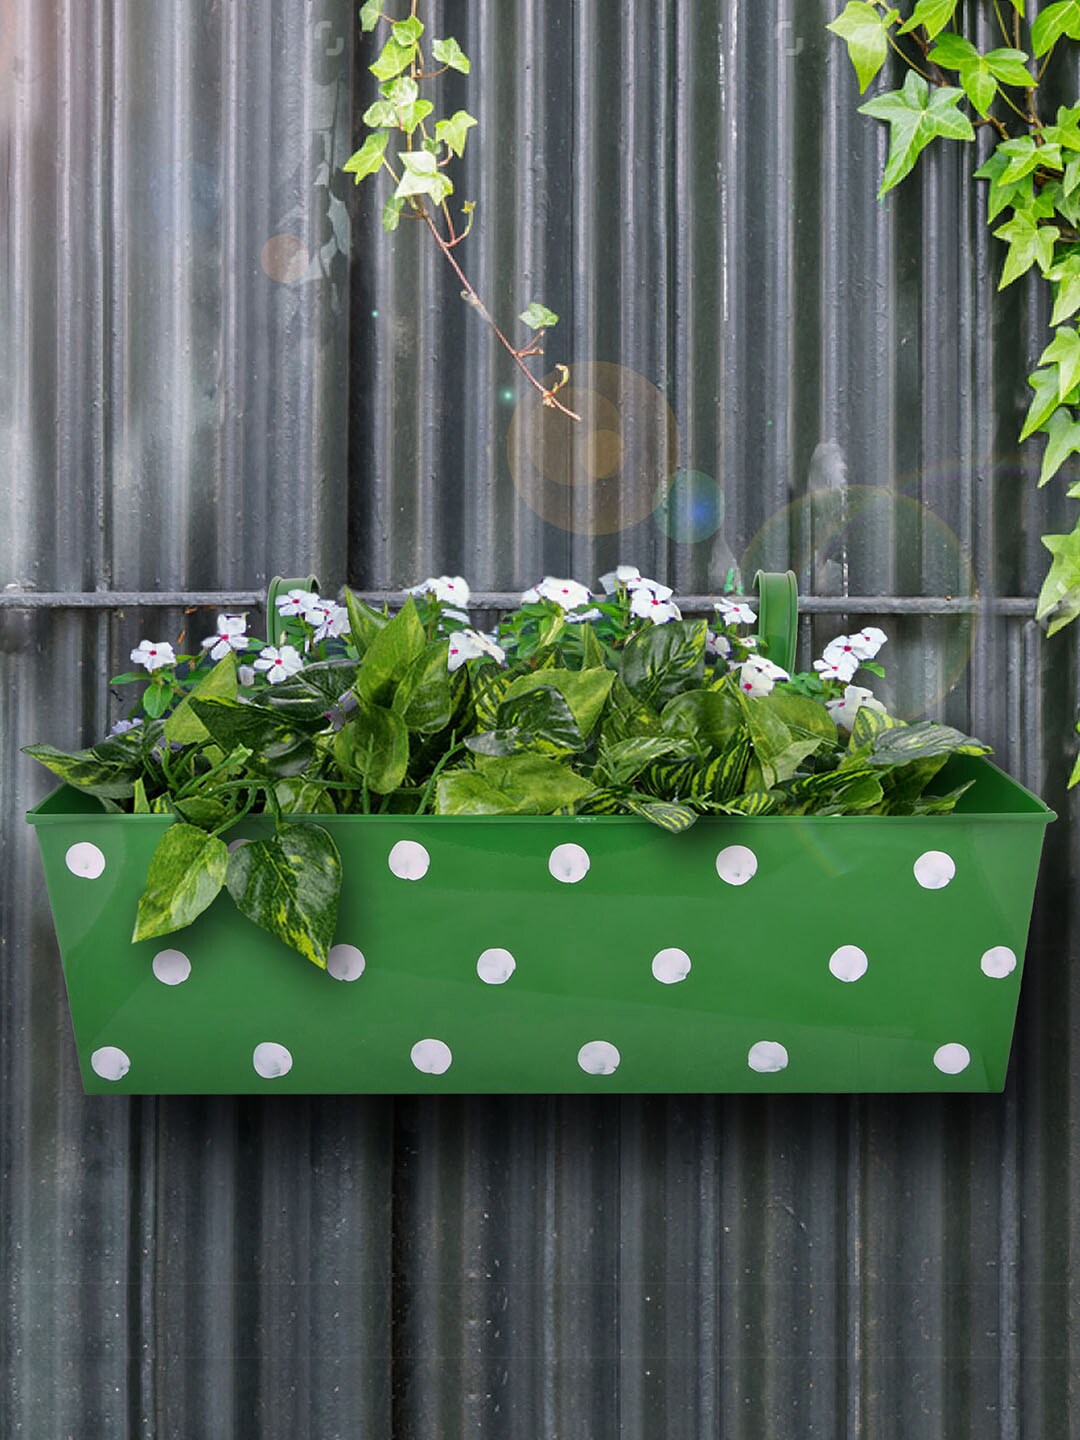 green girgit Green & White Metal Polka Dot Rectangular Planter Price in India